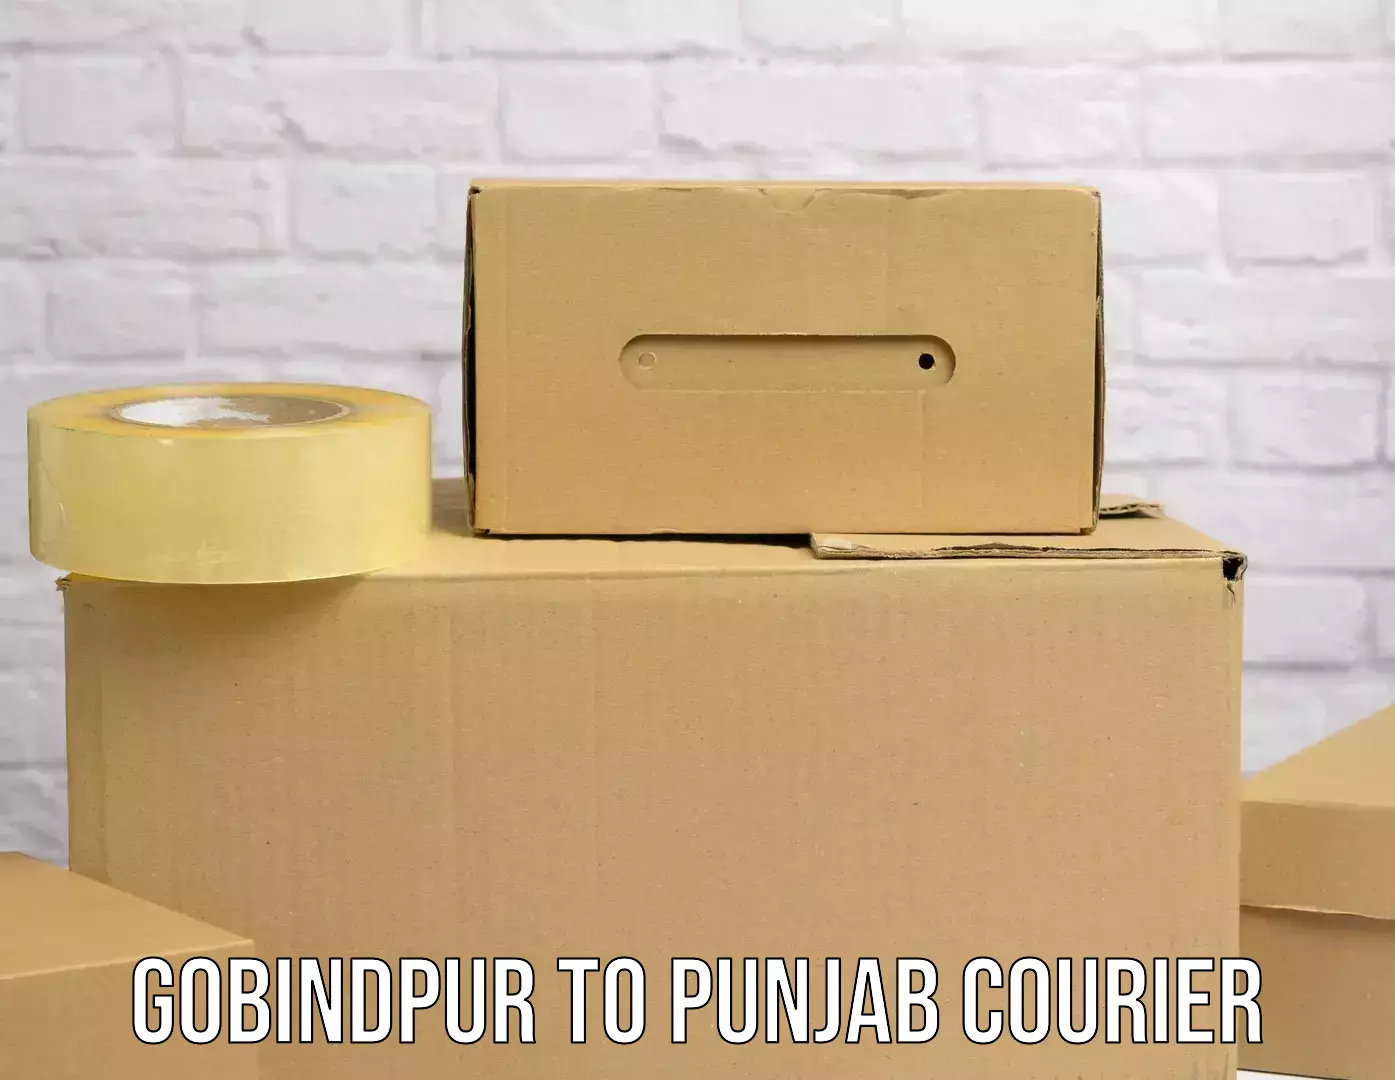 Secure packaging in Gobindpur to Jhunir